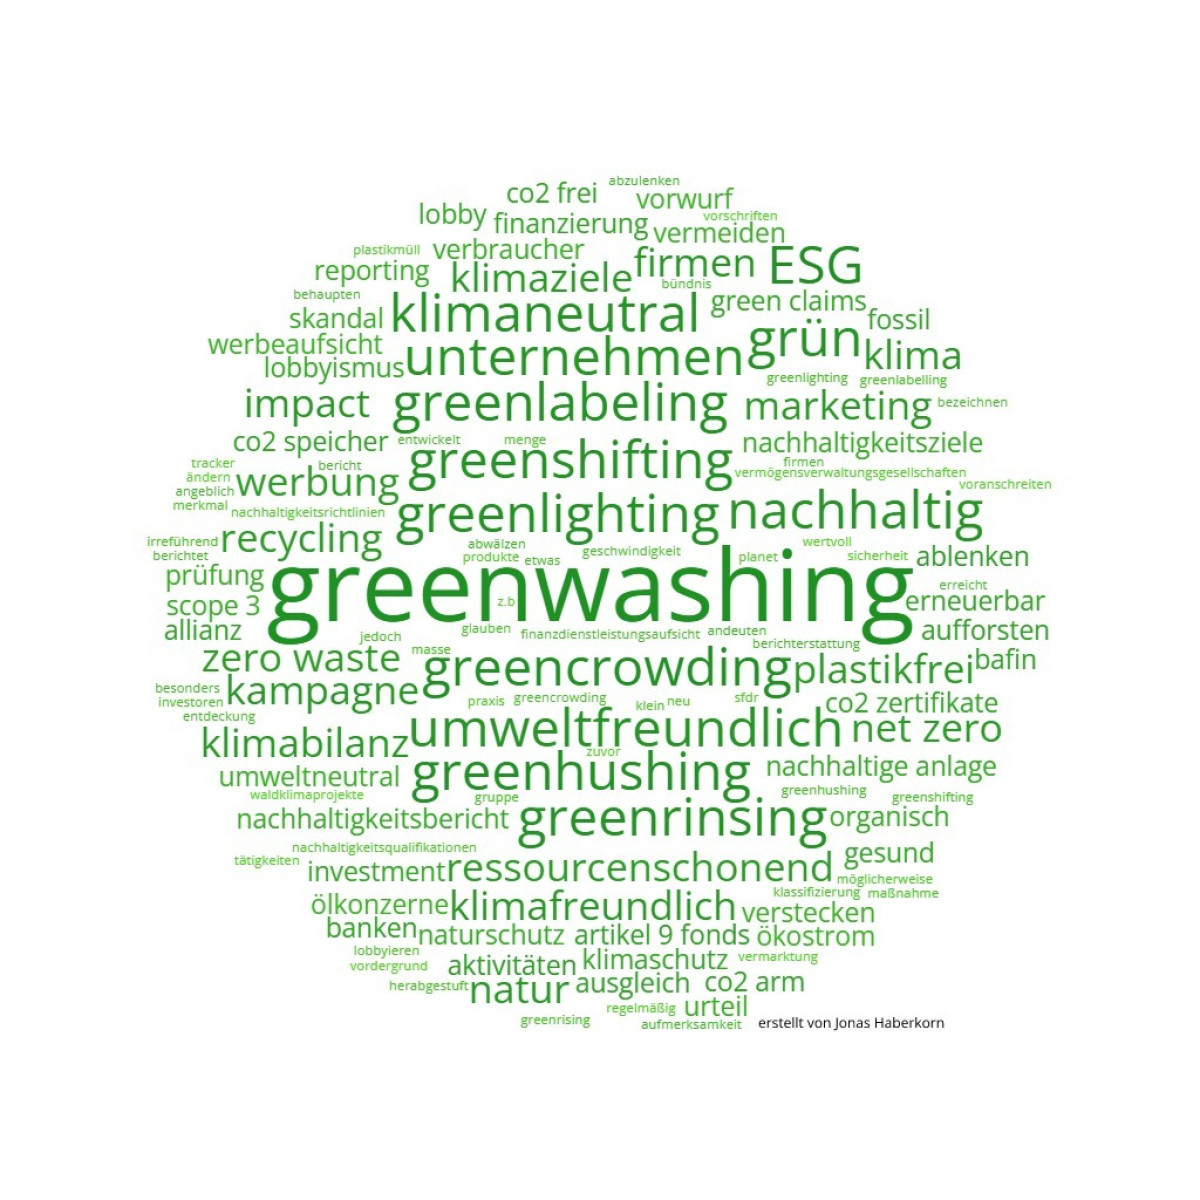 Greenwashing verstehen: Greencrowding, Greenlighting, Greenshifting und mehr ESG Malerei